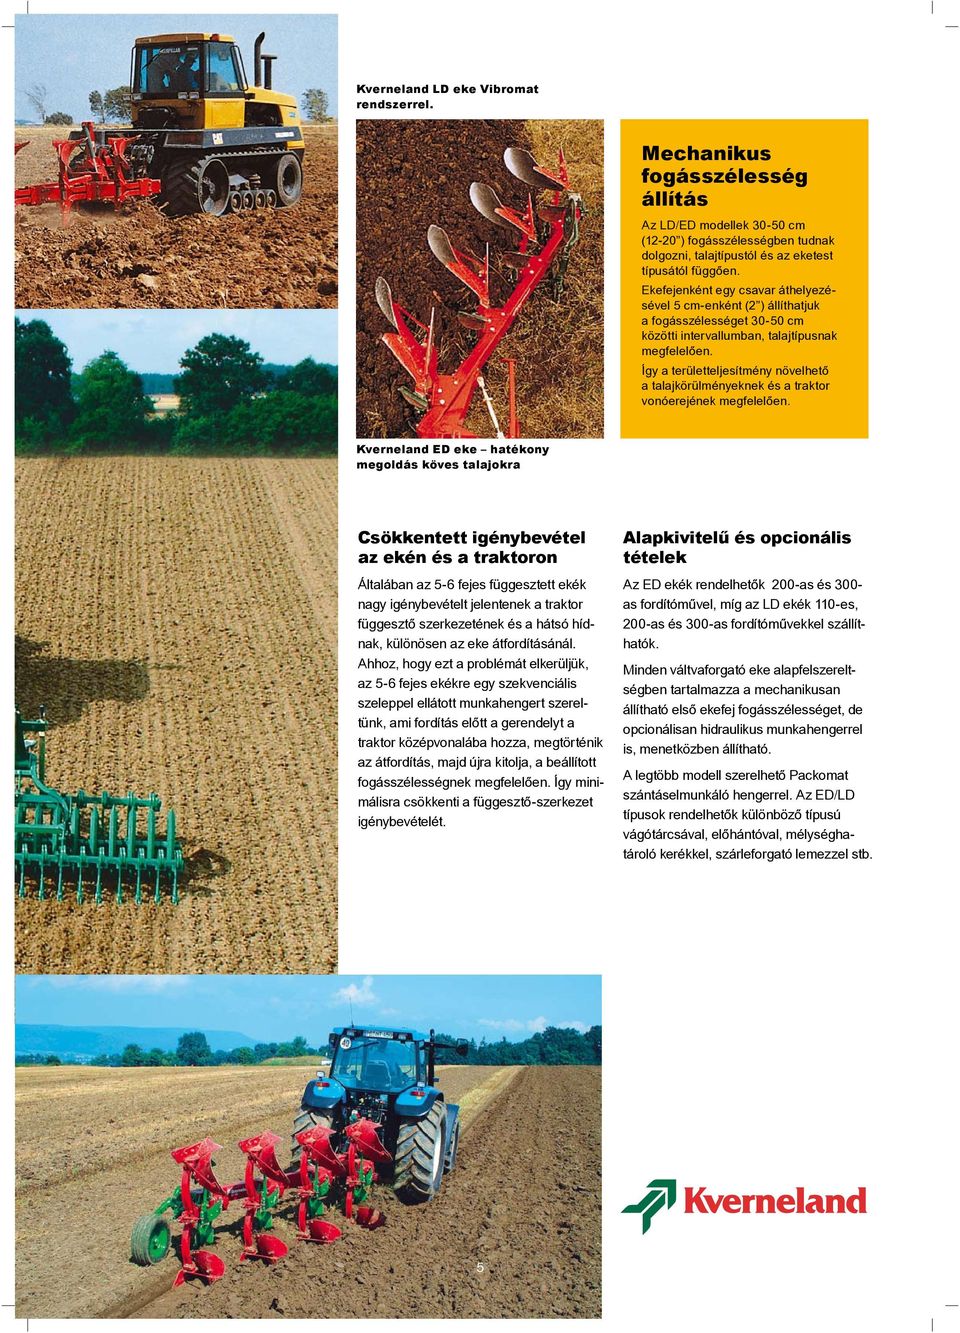 Így a területteljesítmény növelhető a talajkörülményeknek és a traktor vonóerejének megfelelően.